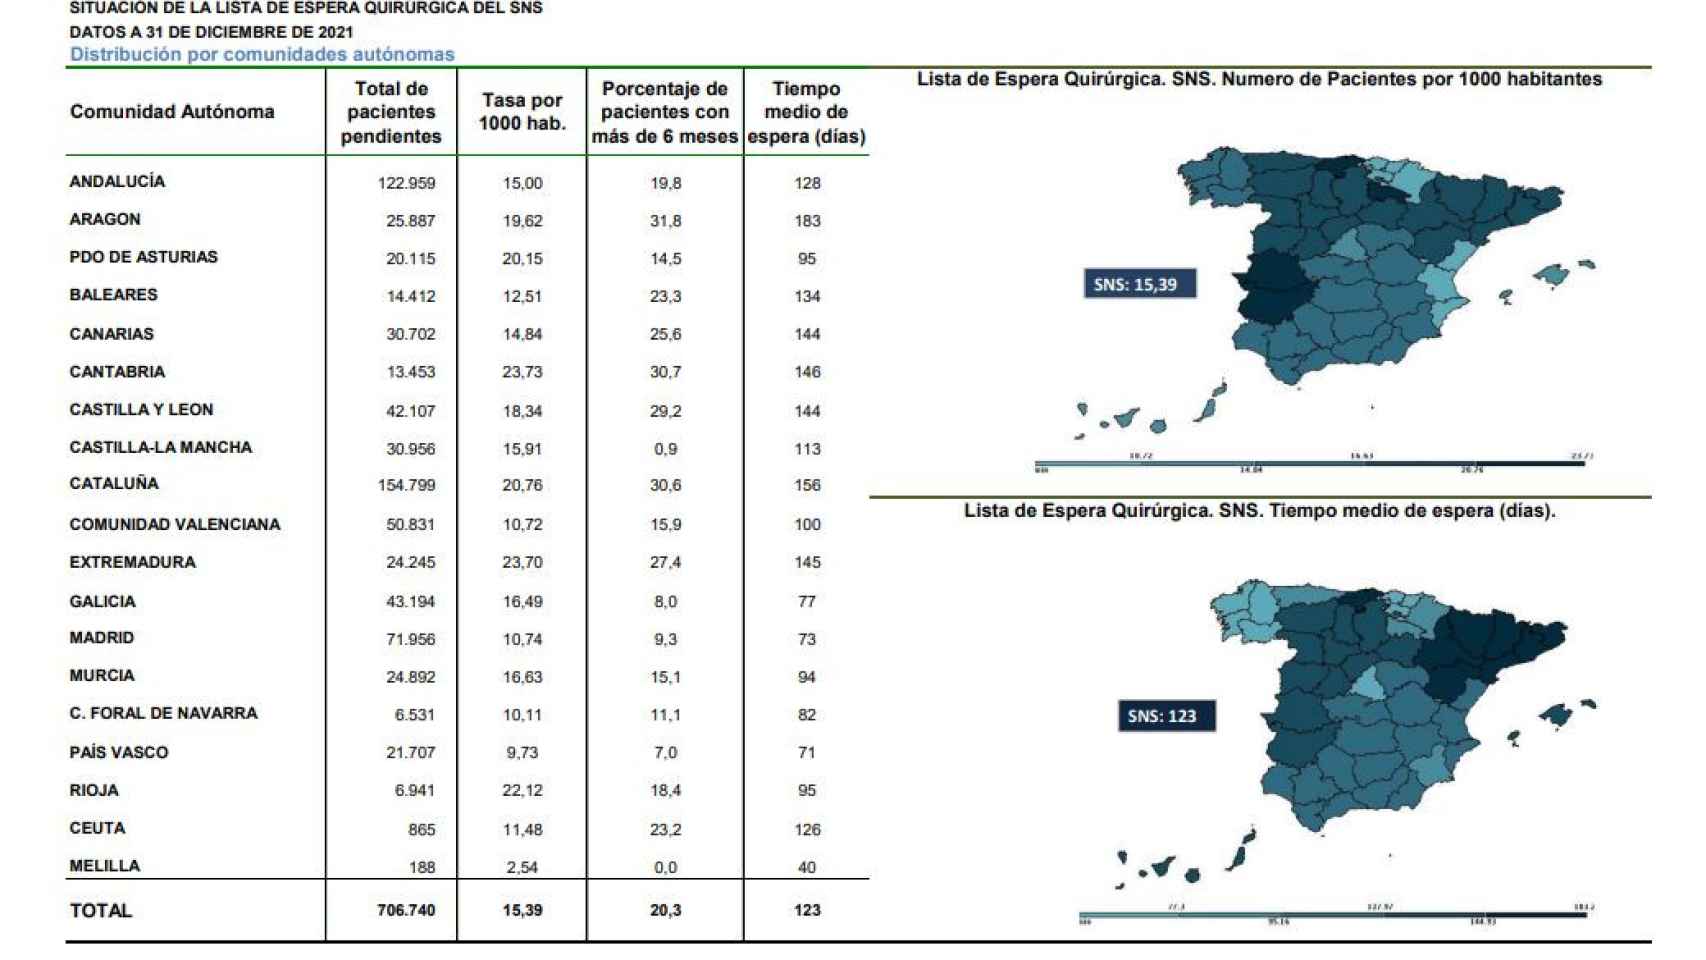 Último gráfico elaborado por el Ministerio de Sanidad sobre la situación de las listas de espera en España.